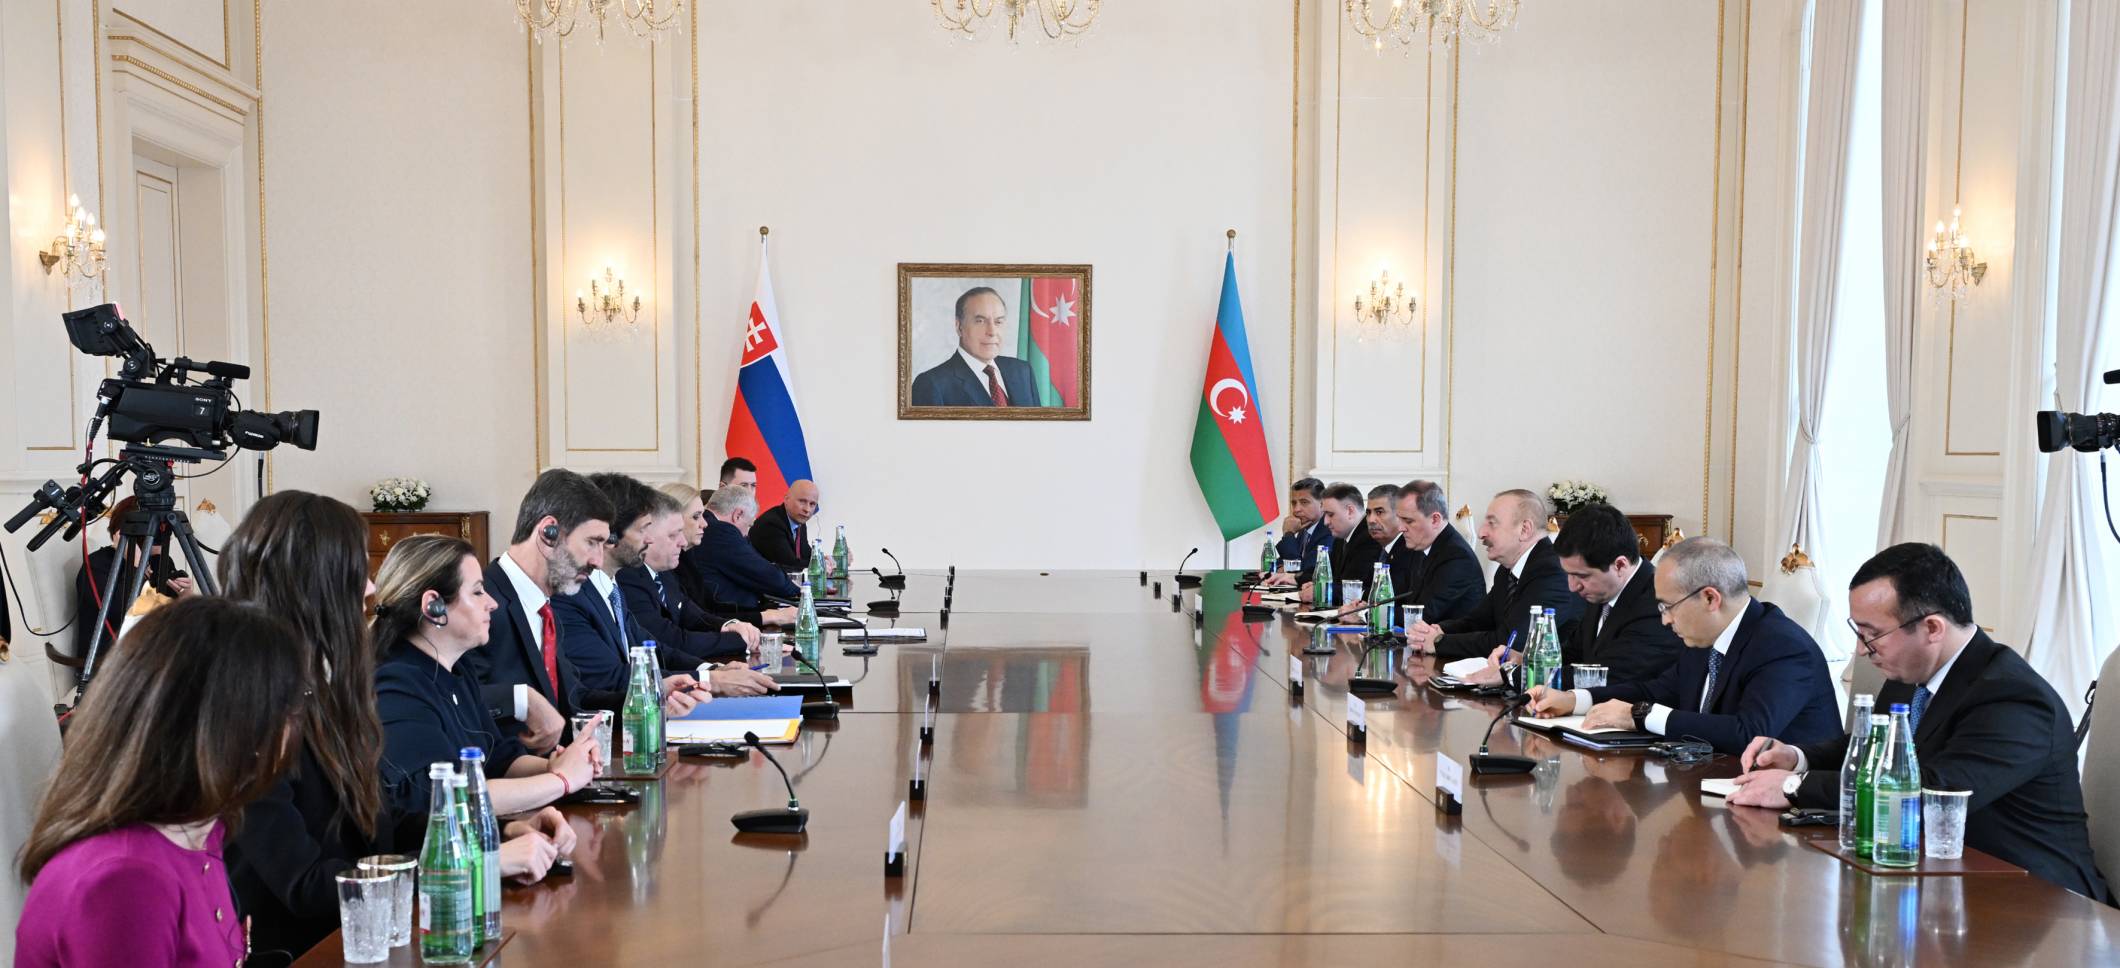 Началась встреча Ильхама Алиева с премьер-министром Словакии в расширенном составе